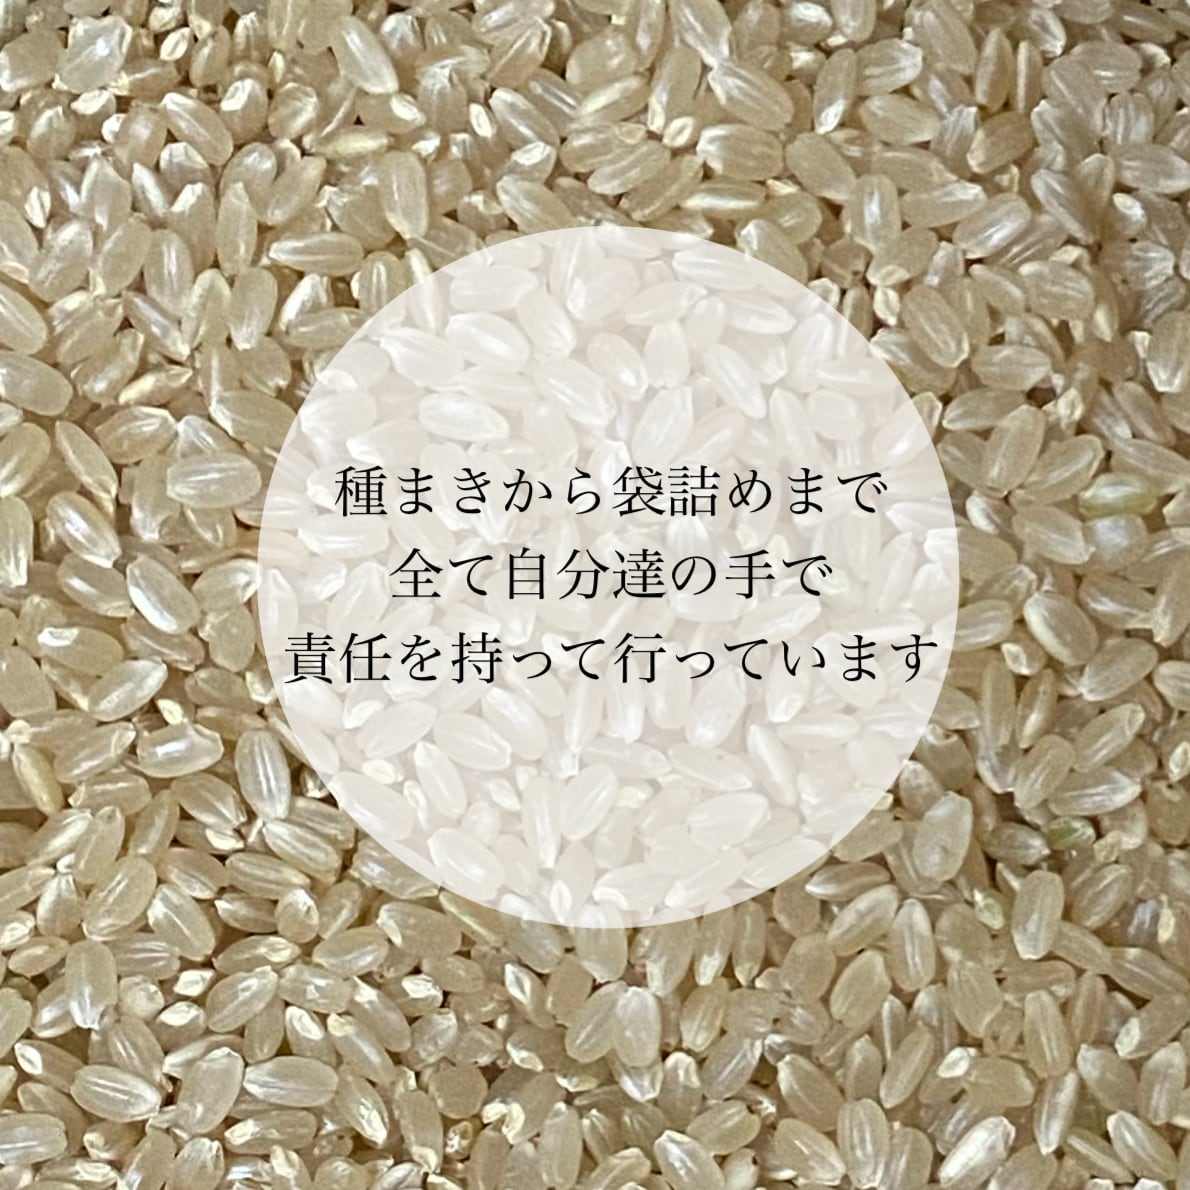 農薬不使用 無化学肥料 除草剤不使用 ヒノヒカリ 新米 玄米 - 米・雑穀